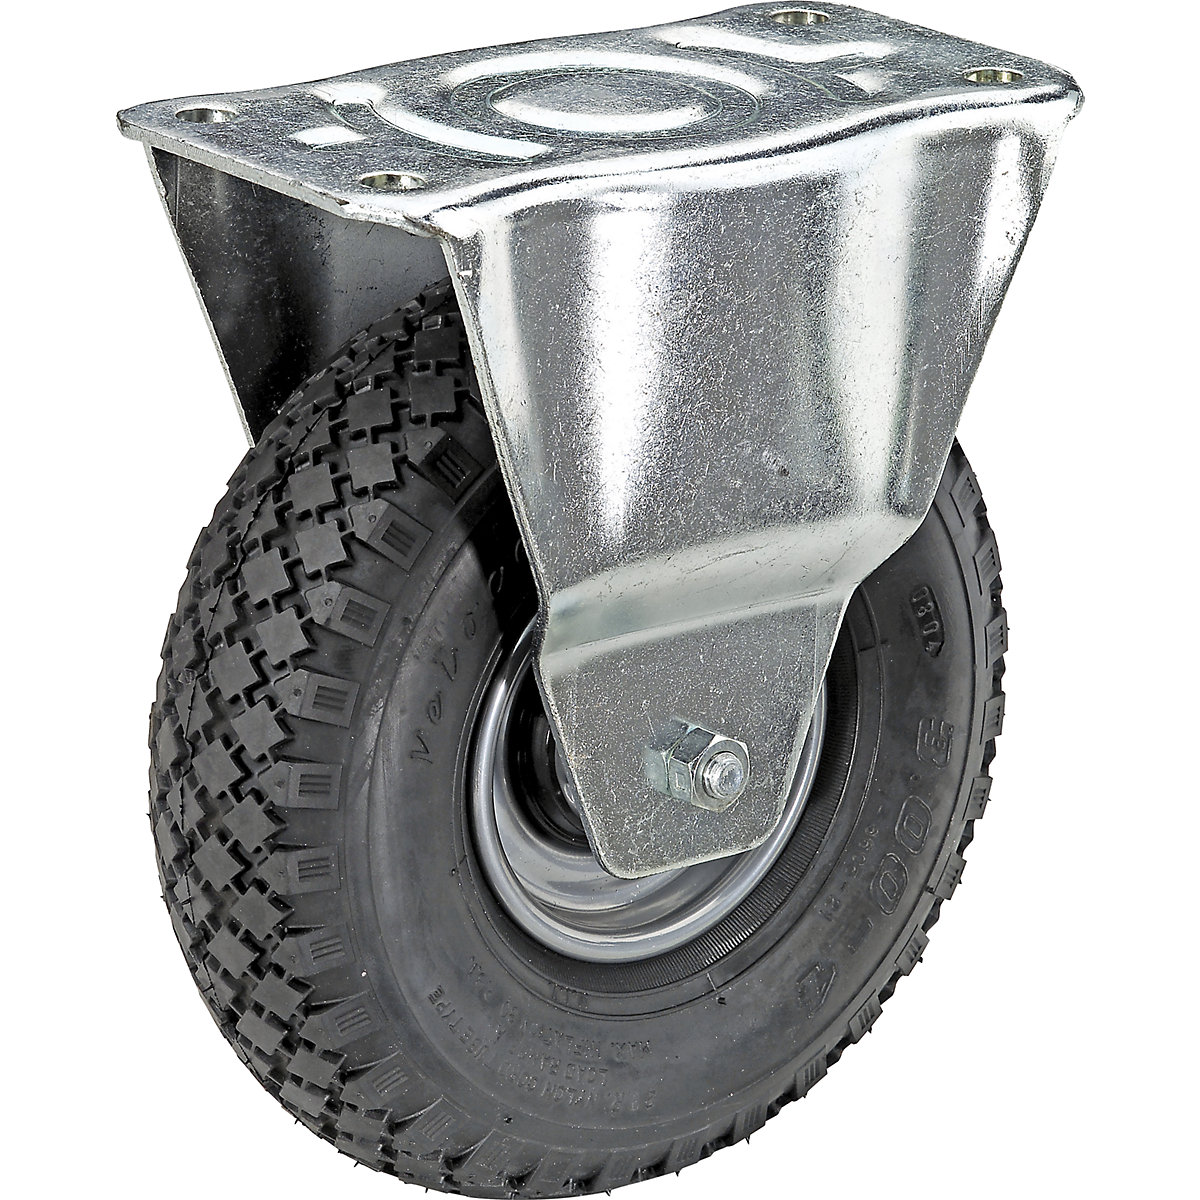 Pneumatic tyre on sheet steel rim, wheel Ø x width 260 x 85 mm, tyre profil block, fixed castor, with roller bearing-6